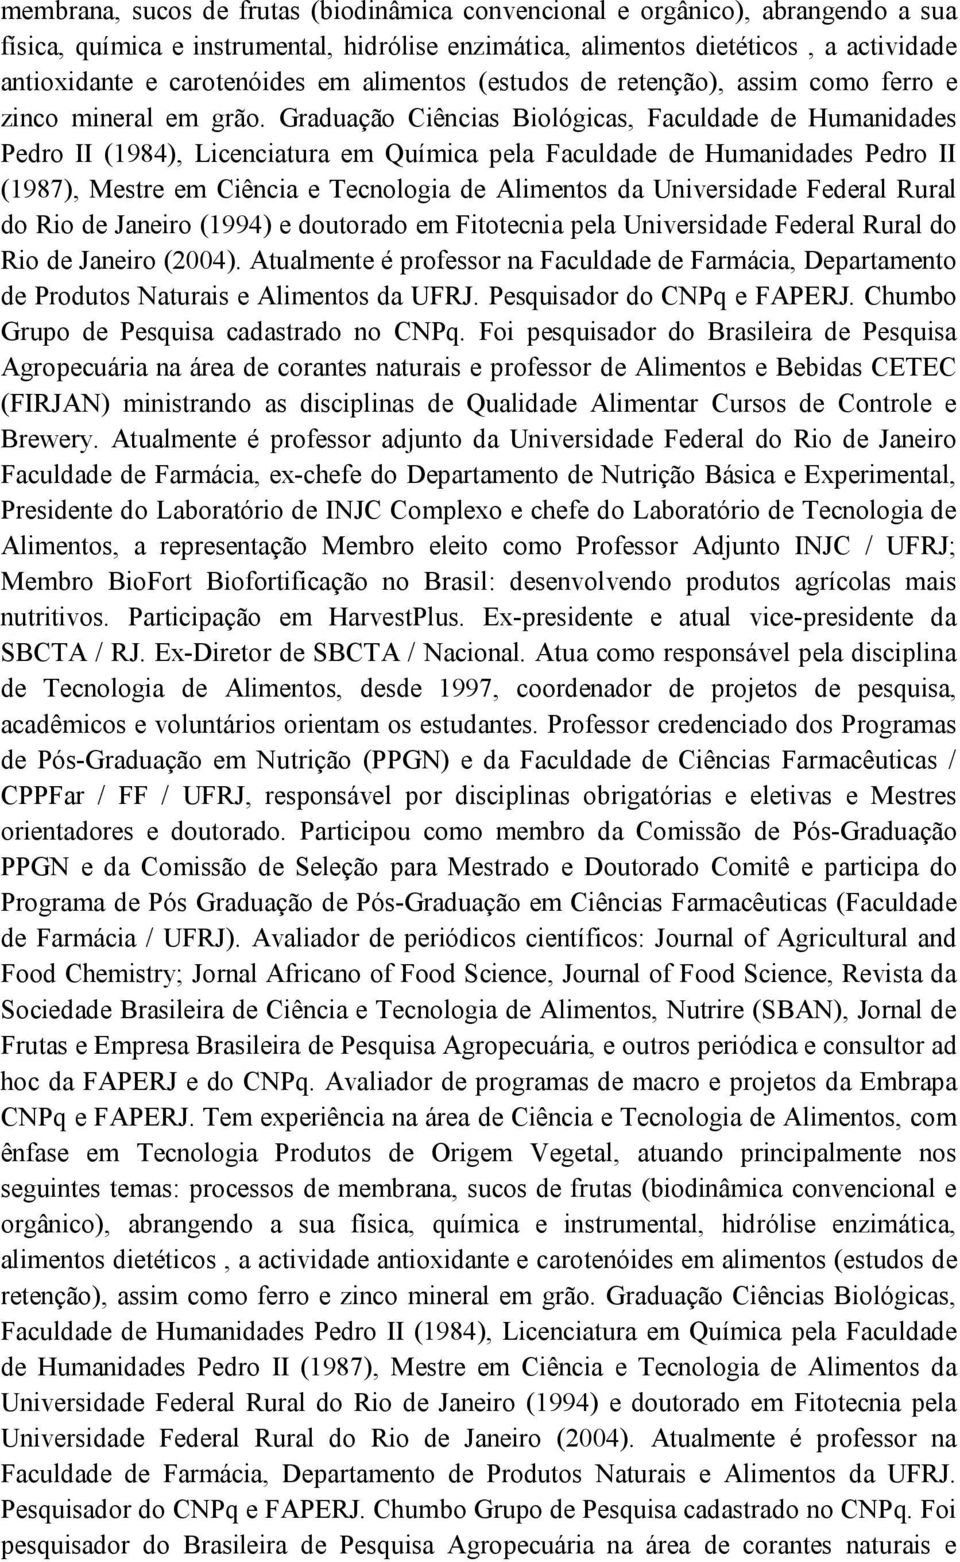 Graduação Ciências Biológicas, Faculdade de Humanidades Pedro II (1984), Licenciatura em Química pela Faculdade de Humanidades Pedro II (1987), Mestre em Ciência e Tecnologia de Alimentos da